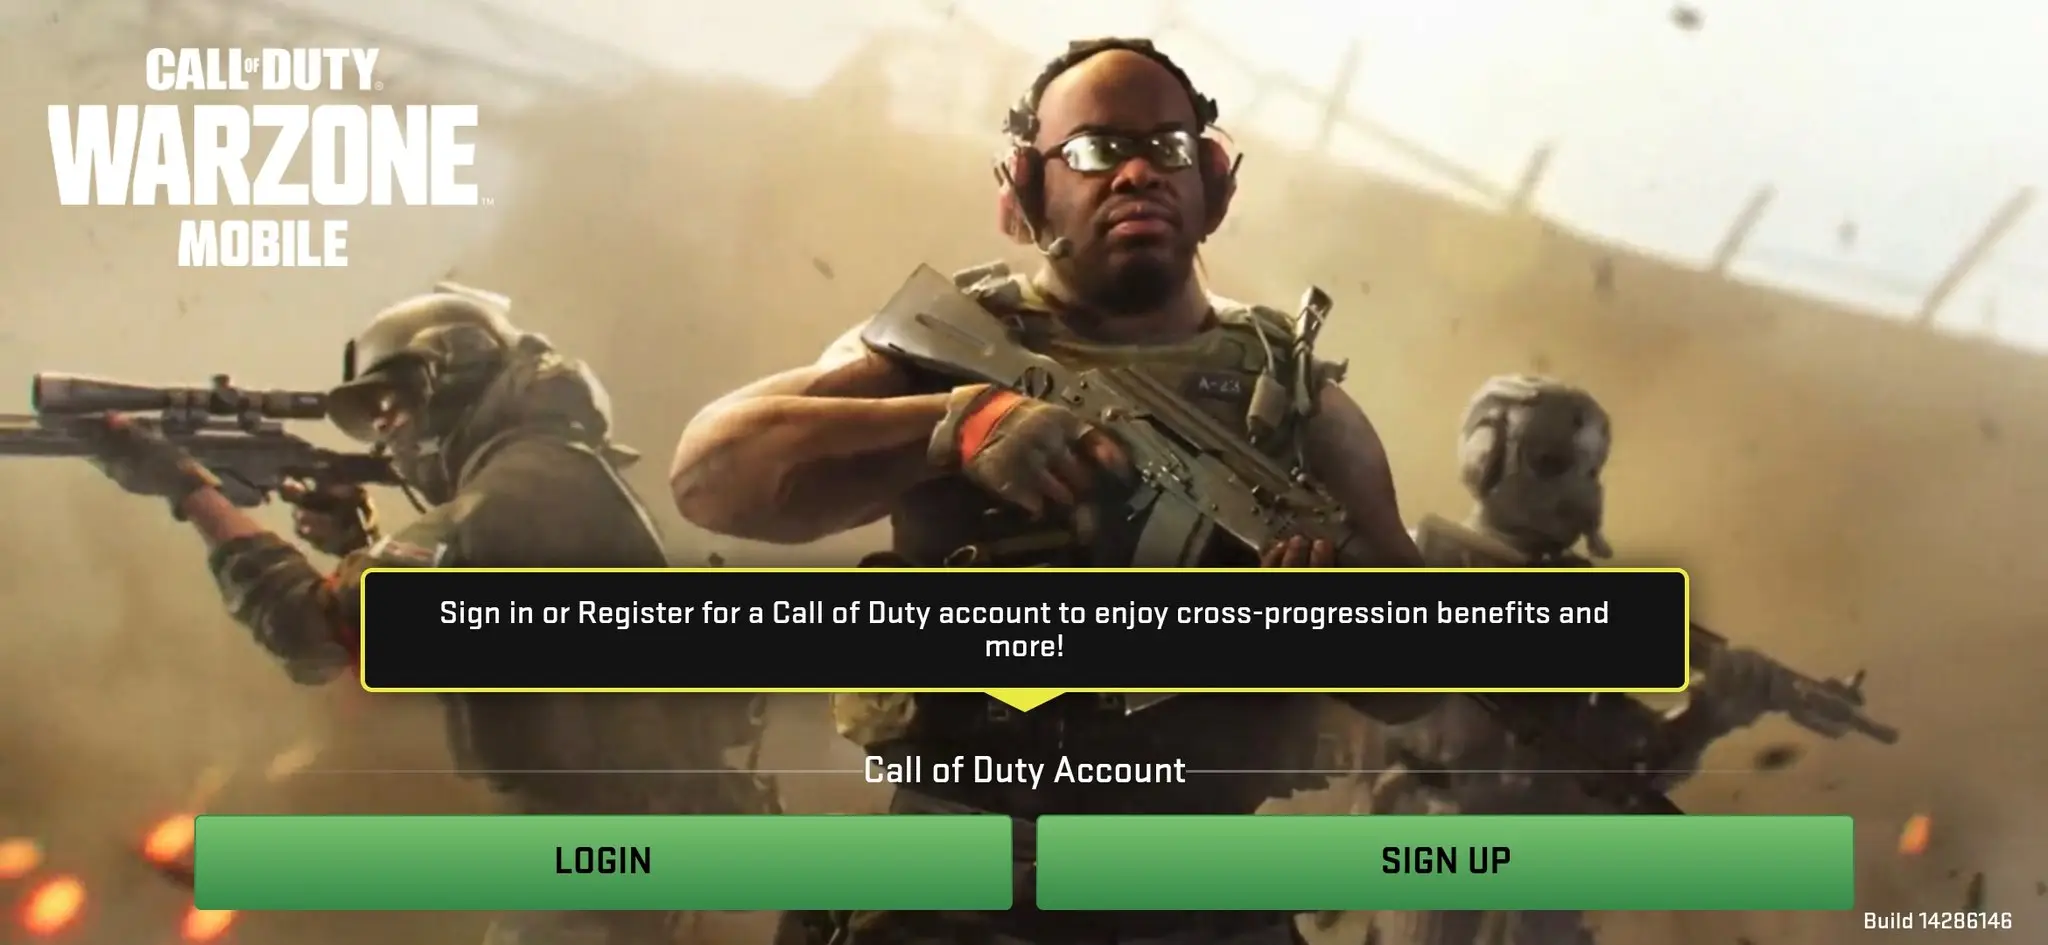 Dito.io - Call of Duty: Warzone Mobile Para nosotros los requisitos mínimo  se estima ya q no es oficial la noticia. El requisito mínimo es de 4 d ram  con un snapdragon